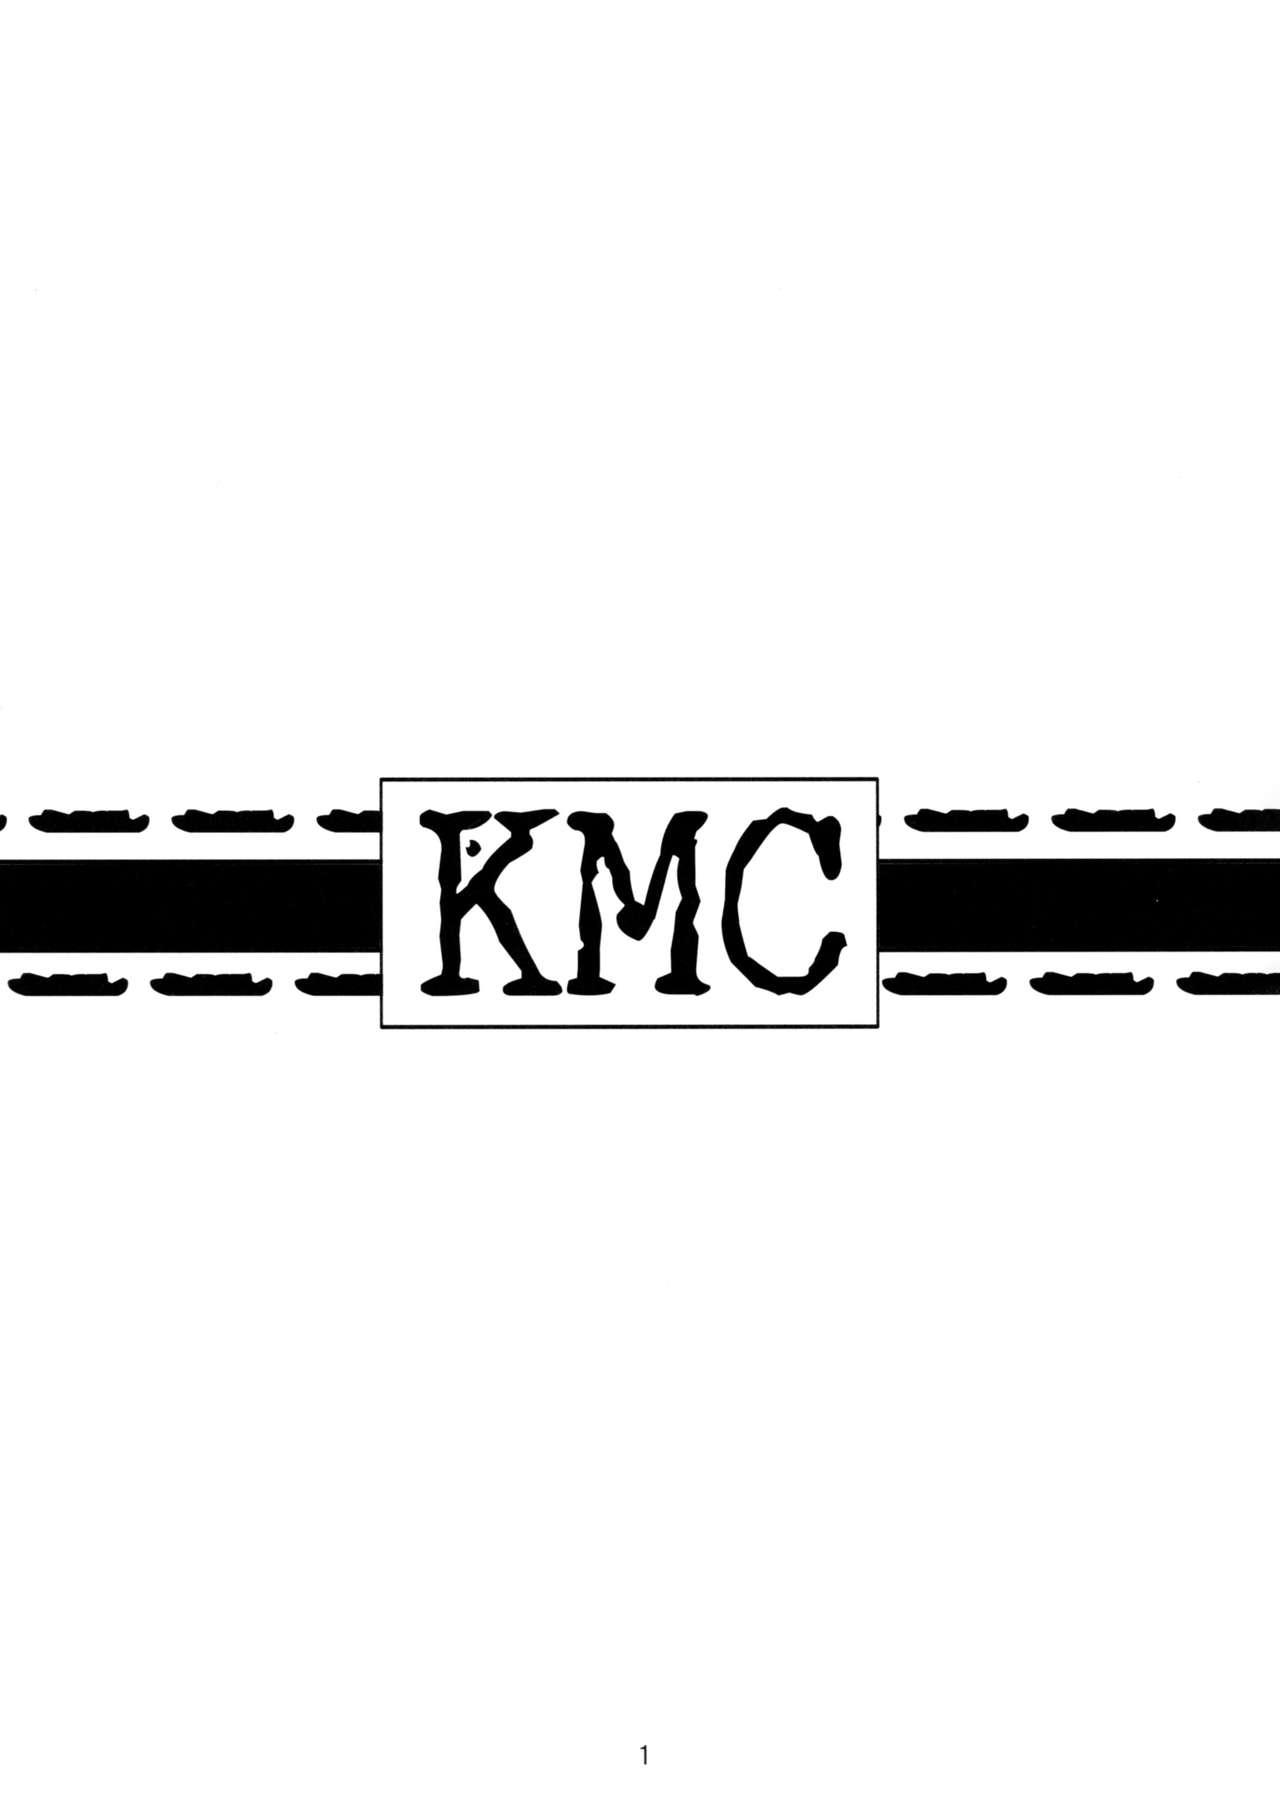 KMC 1